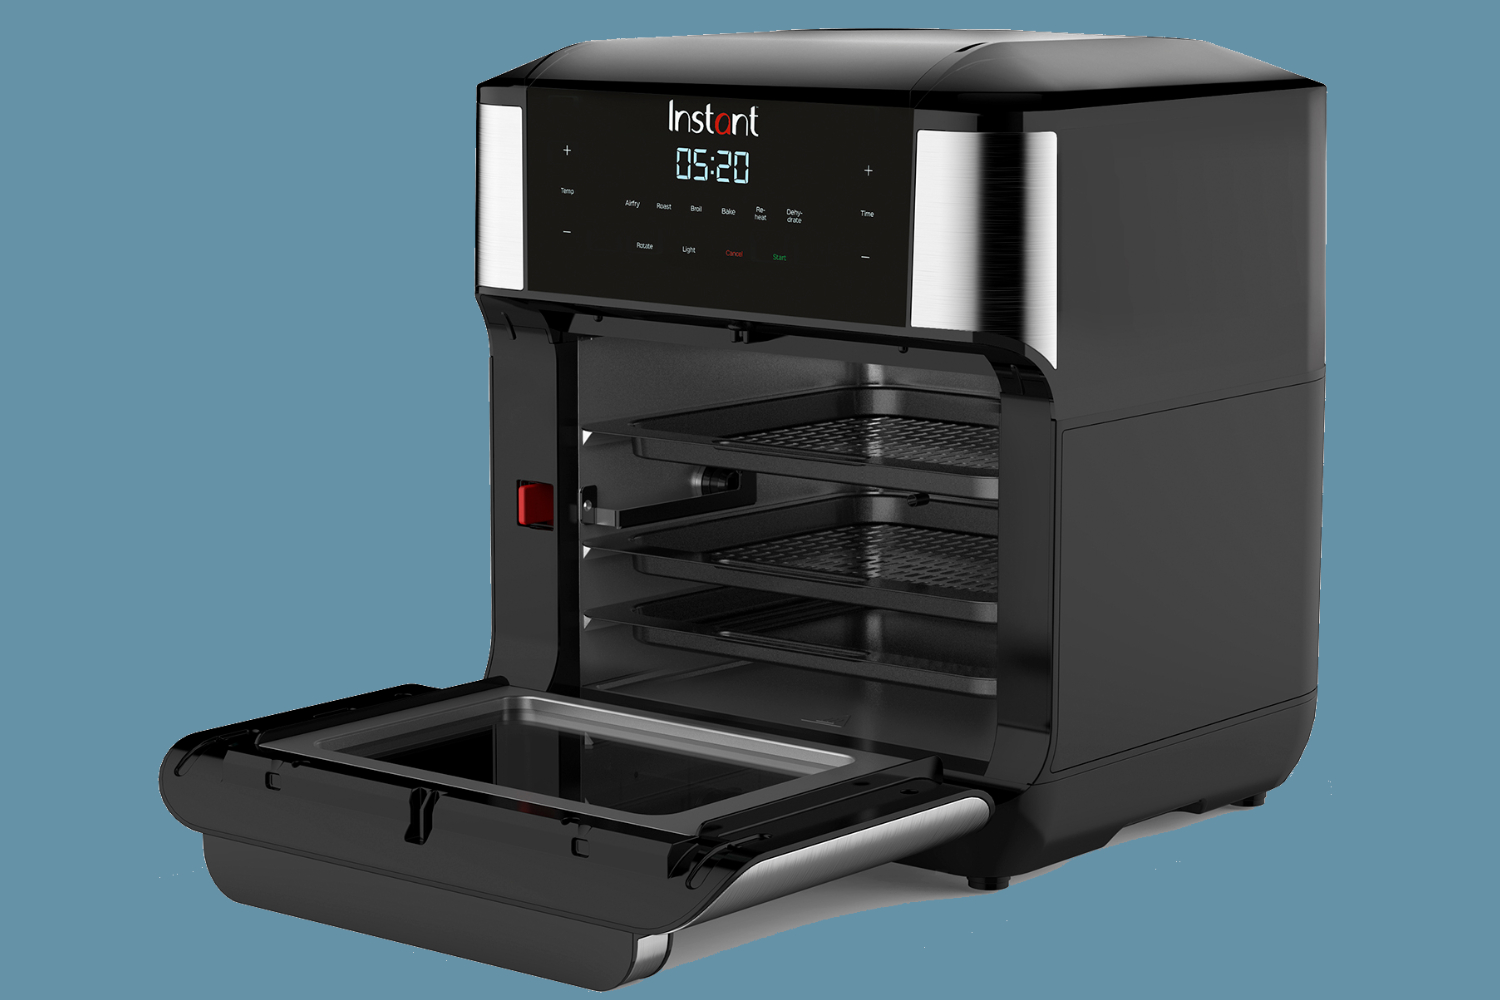 Vortex Plus Air Fryer Oven 10 qt. by Instnat Pot REVIEW